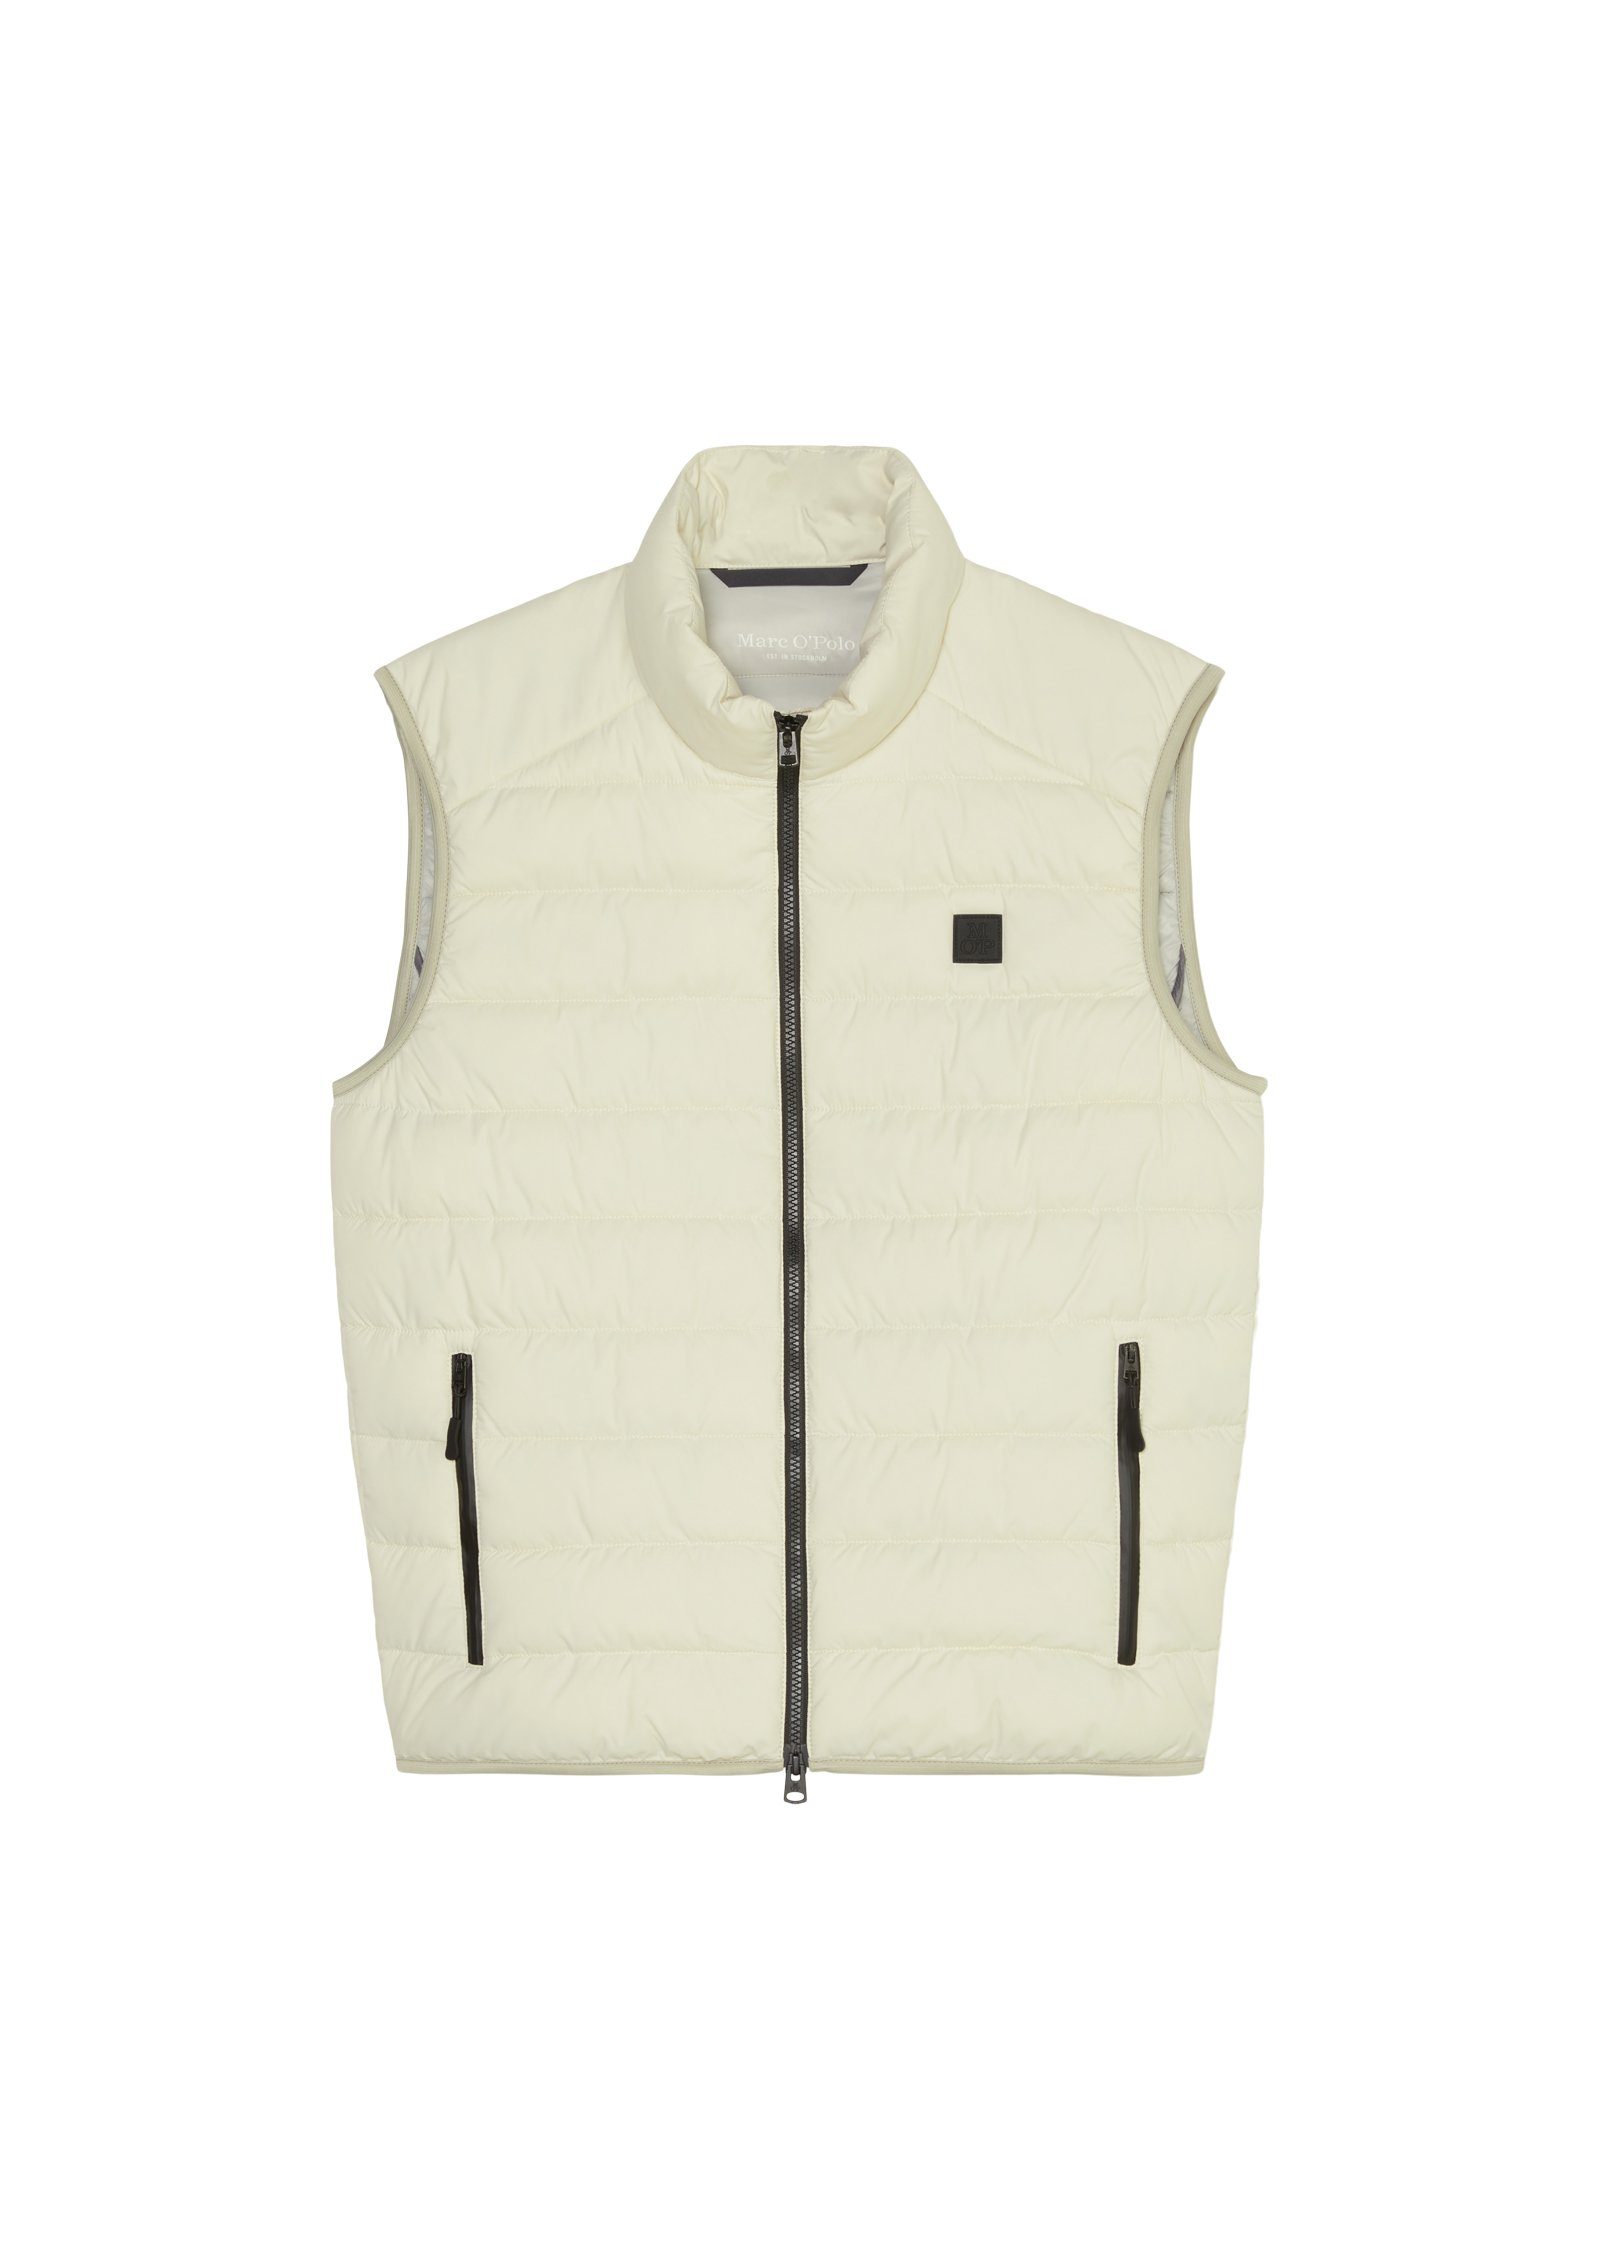 Marc O'Polo Steppweste Vest, stand-up Oberfläche linen white mit sdnd, collar wasserabweisender